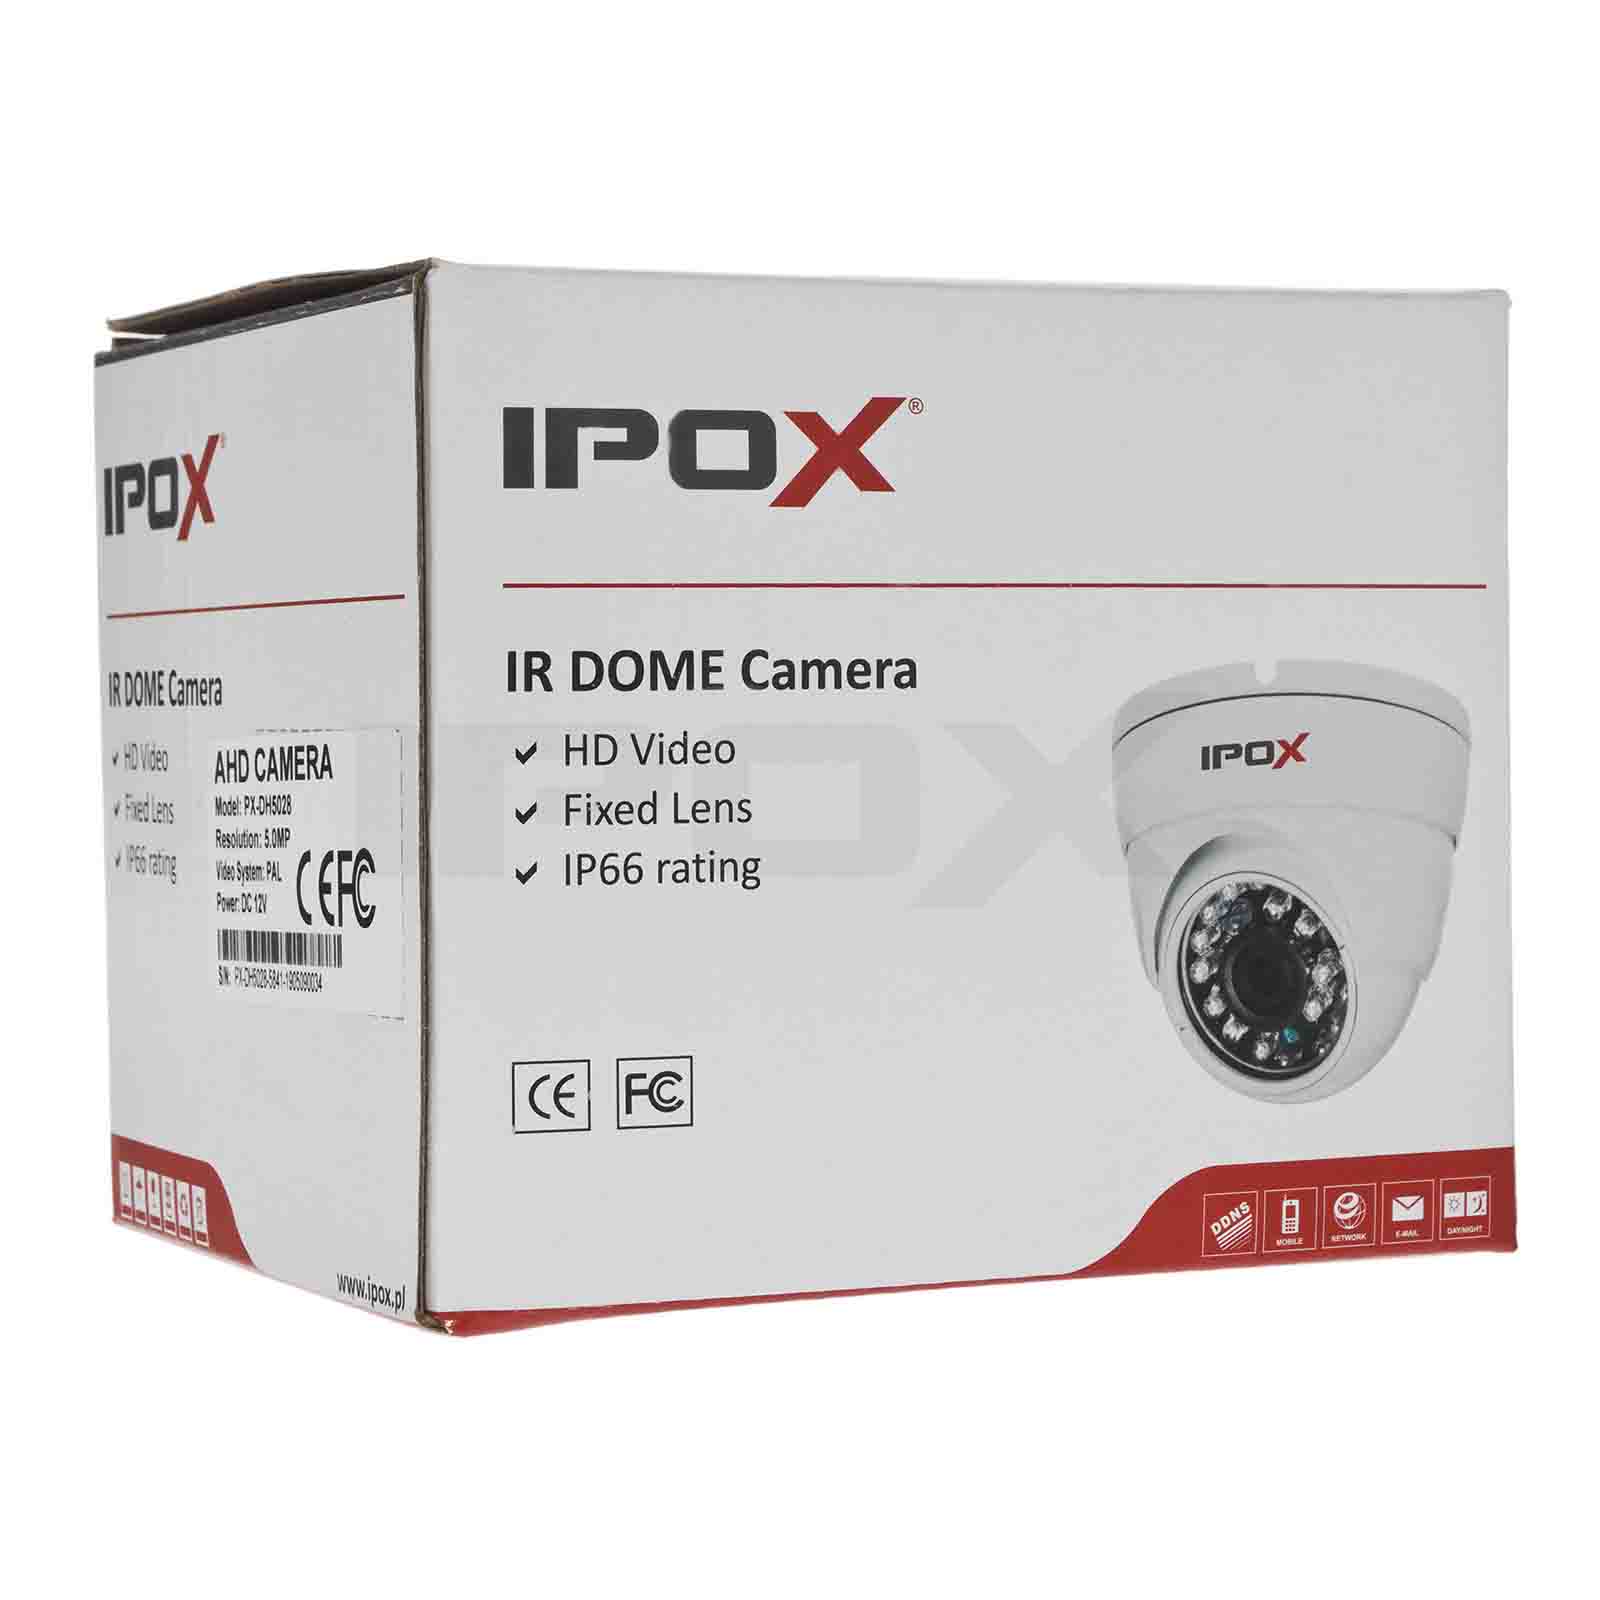 Kamera kopułkowa PX-DH2028-E/W (biała)